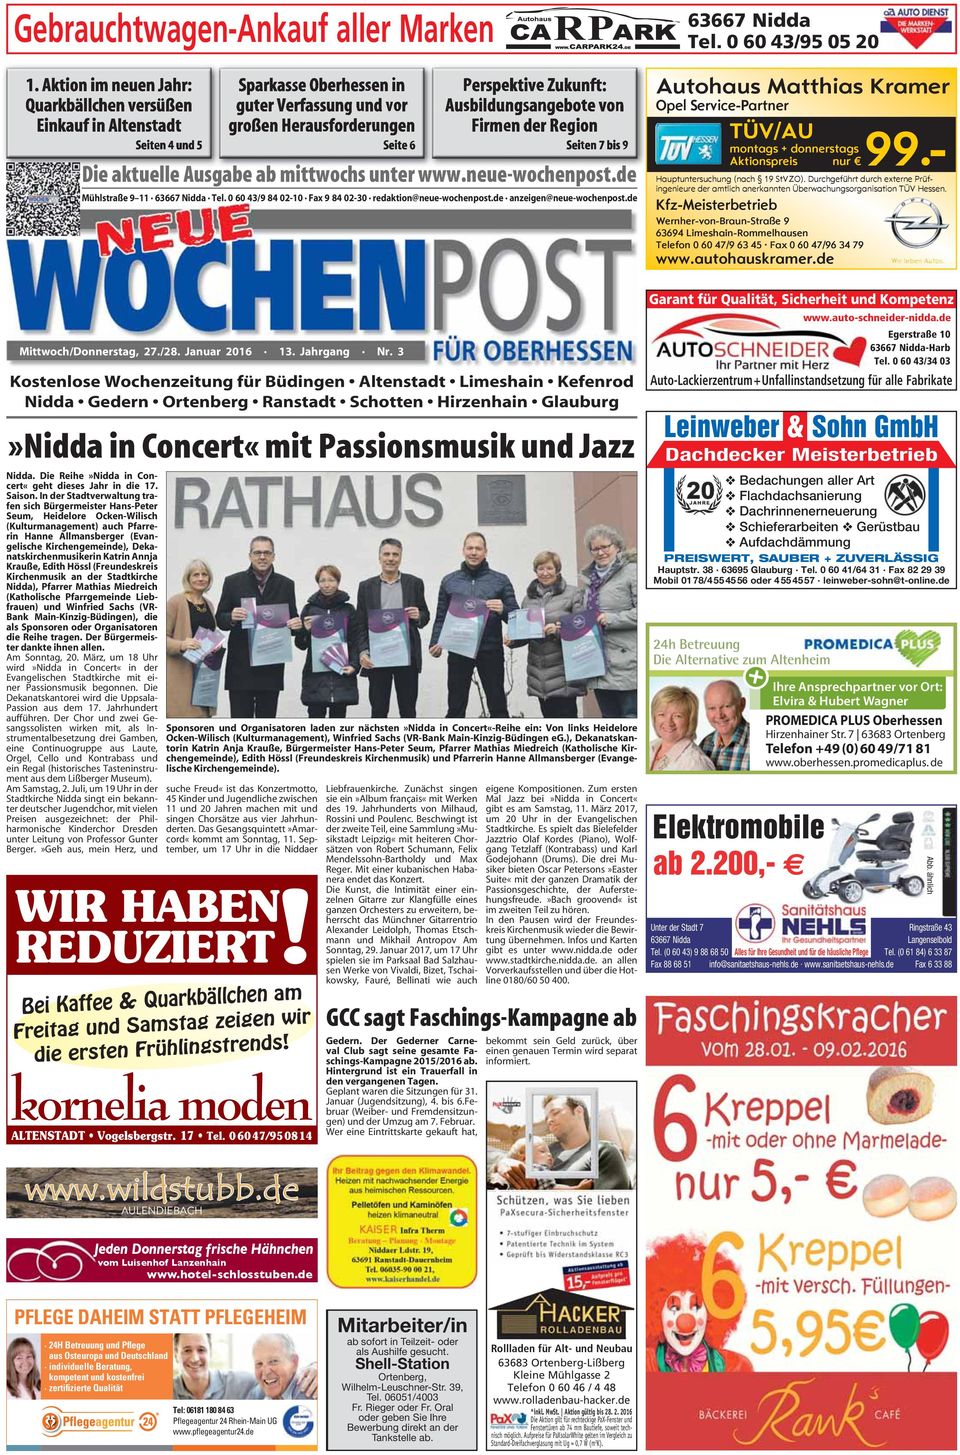 Kostenlose Wochenzeitung für Büdingen Altenstadt Limeshain Kefenrod Nidda Gedern Ortenberg Ranstadt Schotten Hirzenhain Glauburg»Nidda in Concert«mit Passionsmusik und Jazz Nidda.